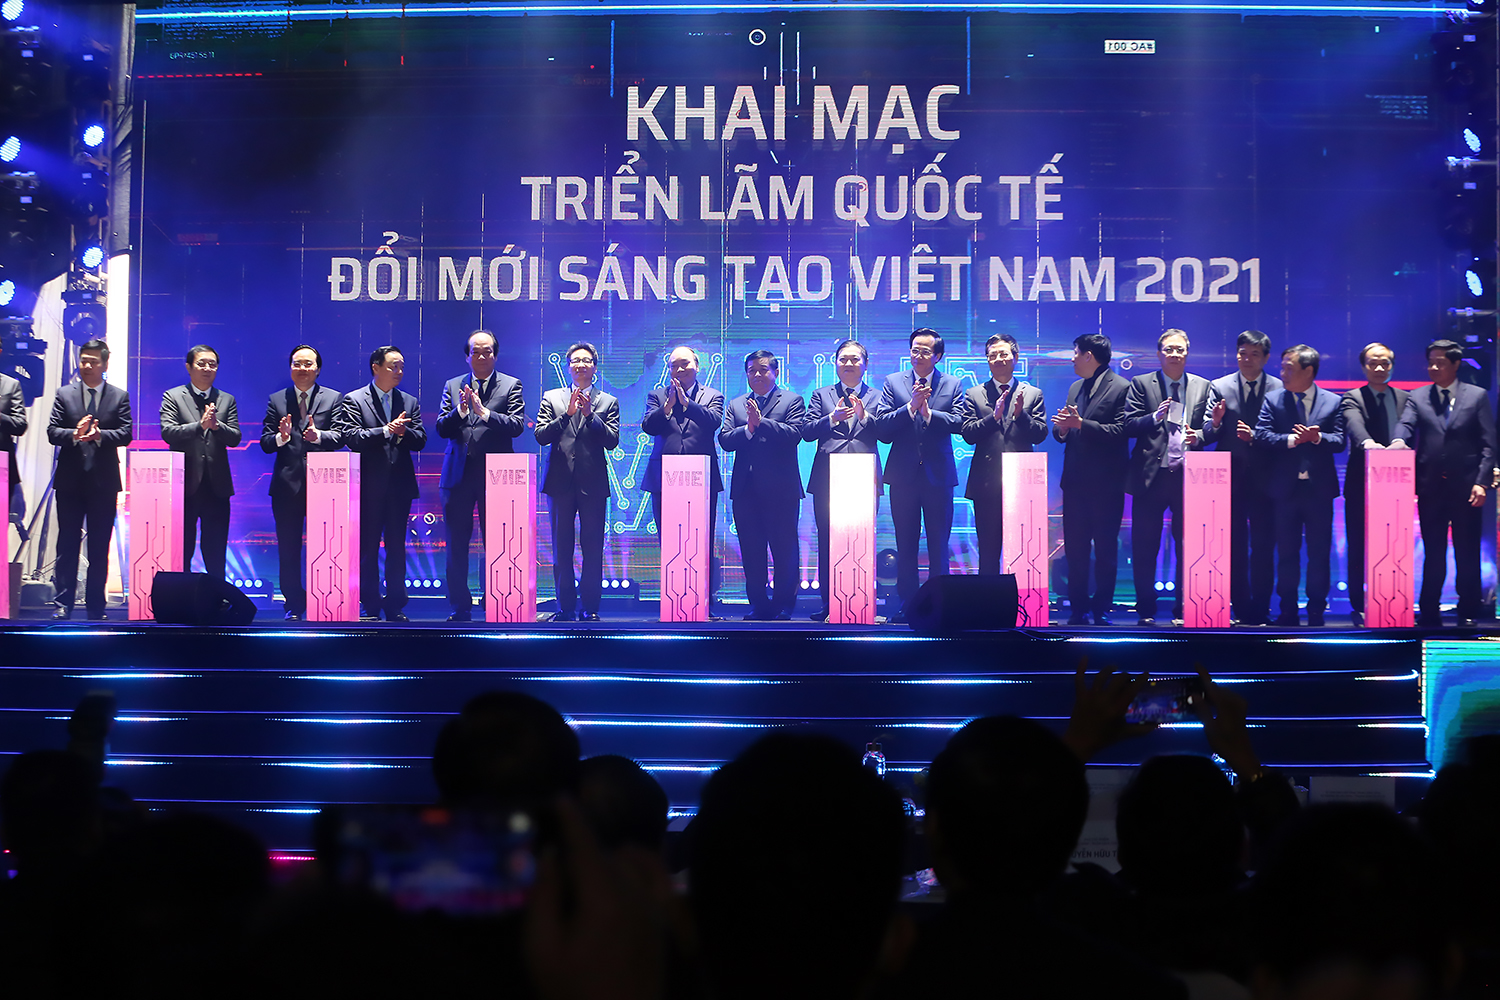 Thủ tướng Nguyễn Xuân Phúc cùng các lãnh đạo cấp cao của Chính phủ và các Bộ, ngành nhấn nút khởi công xây dựng Trung tâm Đổi mới sáng tạo quốc gia và khai mạc Triển lãm quốc tế đổi mới sáng tạo Việt Nam 2021